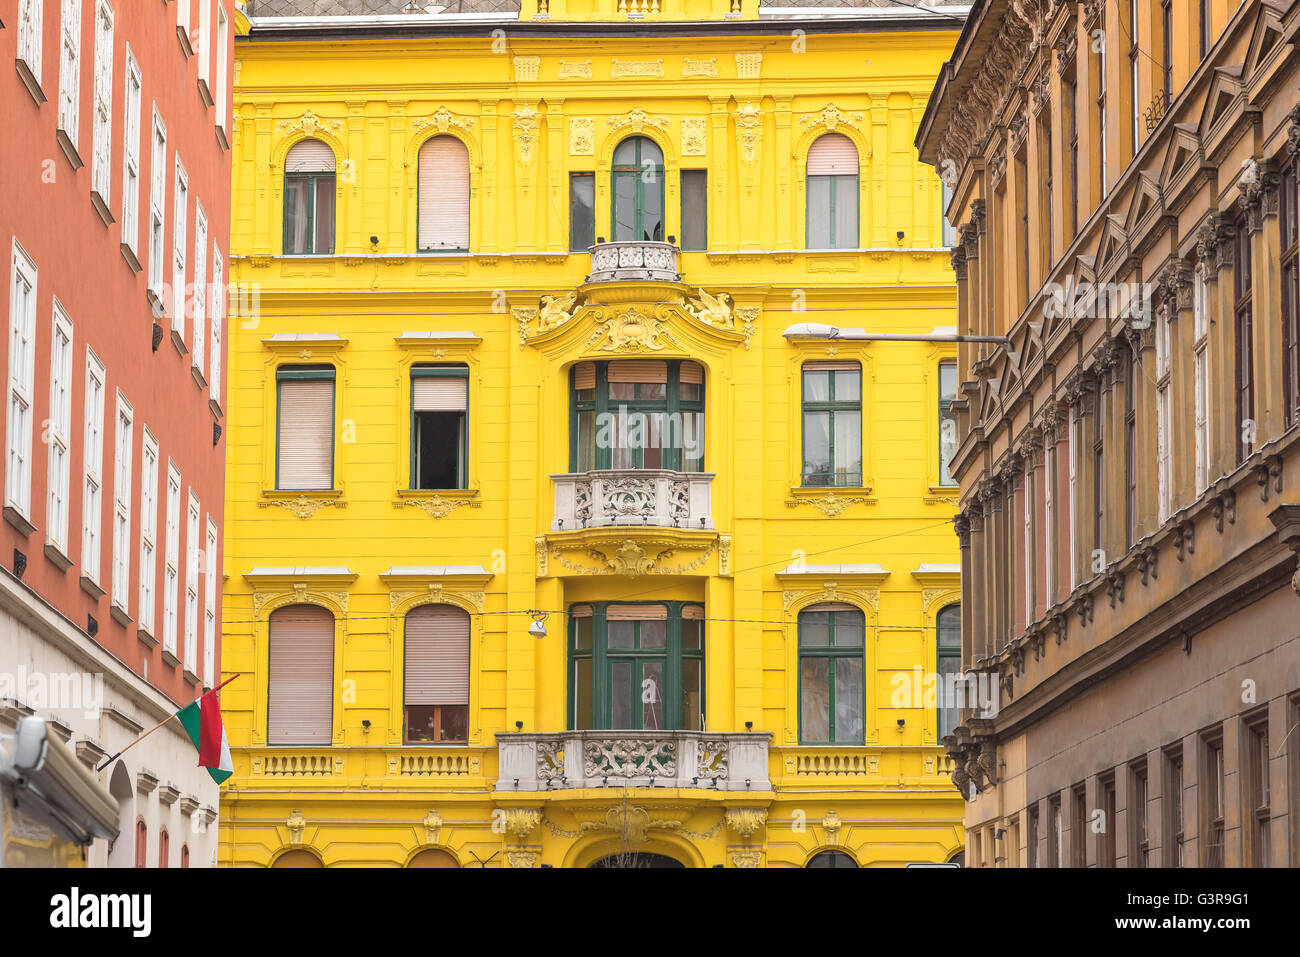 Jozsefvaros Budapest, Blick auf ein farbenfrohes Mehrfamilienhaus aus dem 19th. Jahrhundert im Stadtteil Jozsefvaros von Budapest, Ungarn. Stockfoto